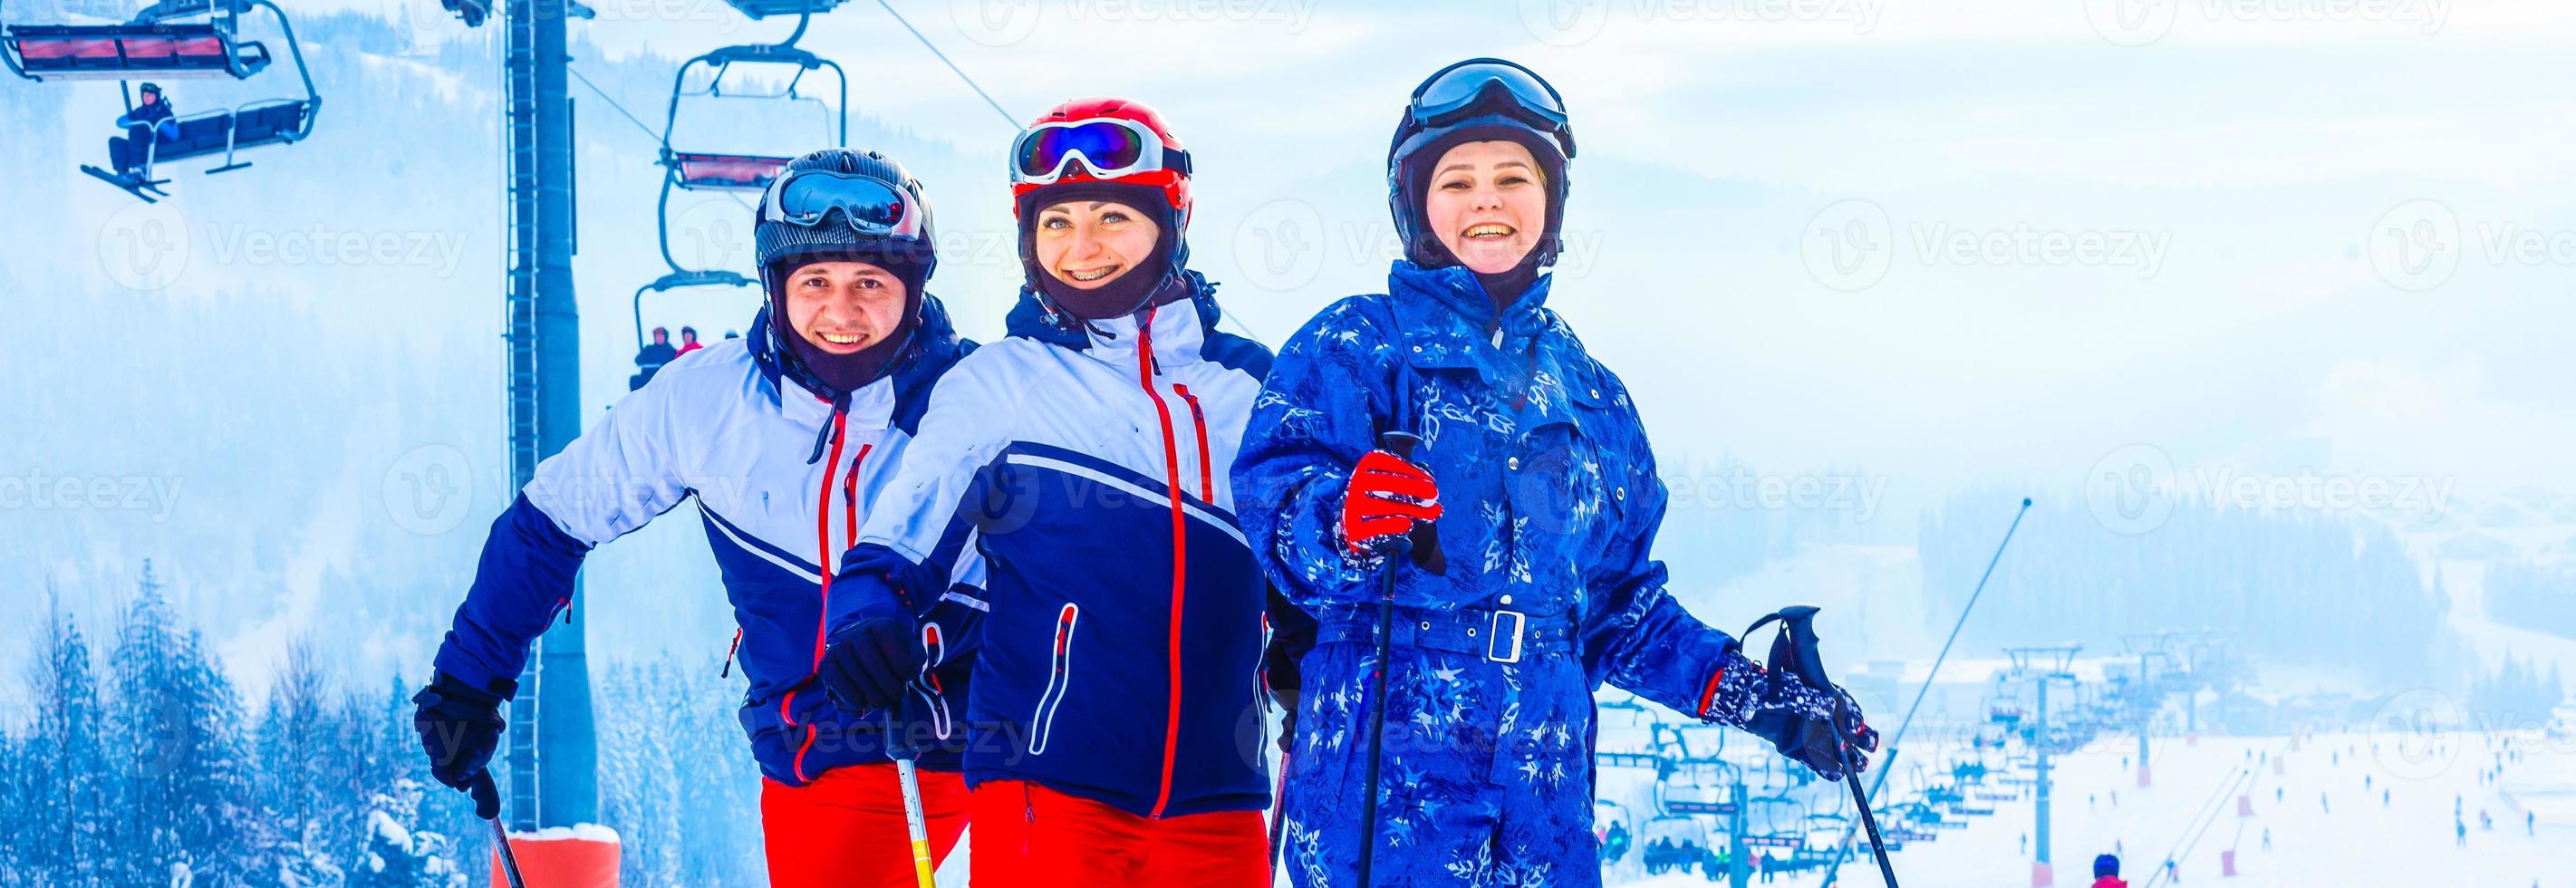 grupo de amigos con esquí caminando en una estación de esquí foto